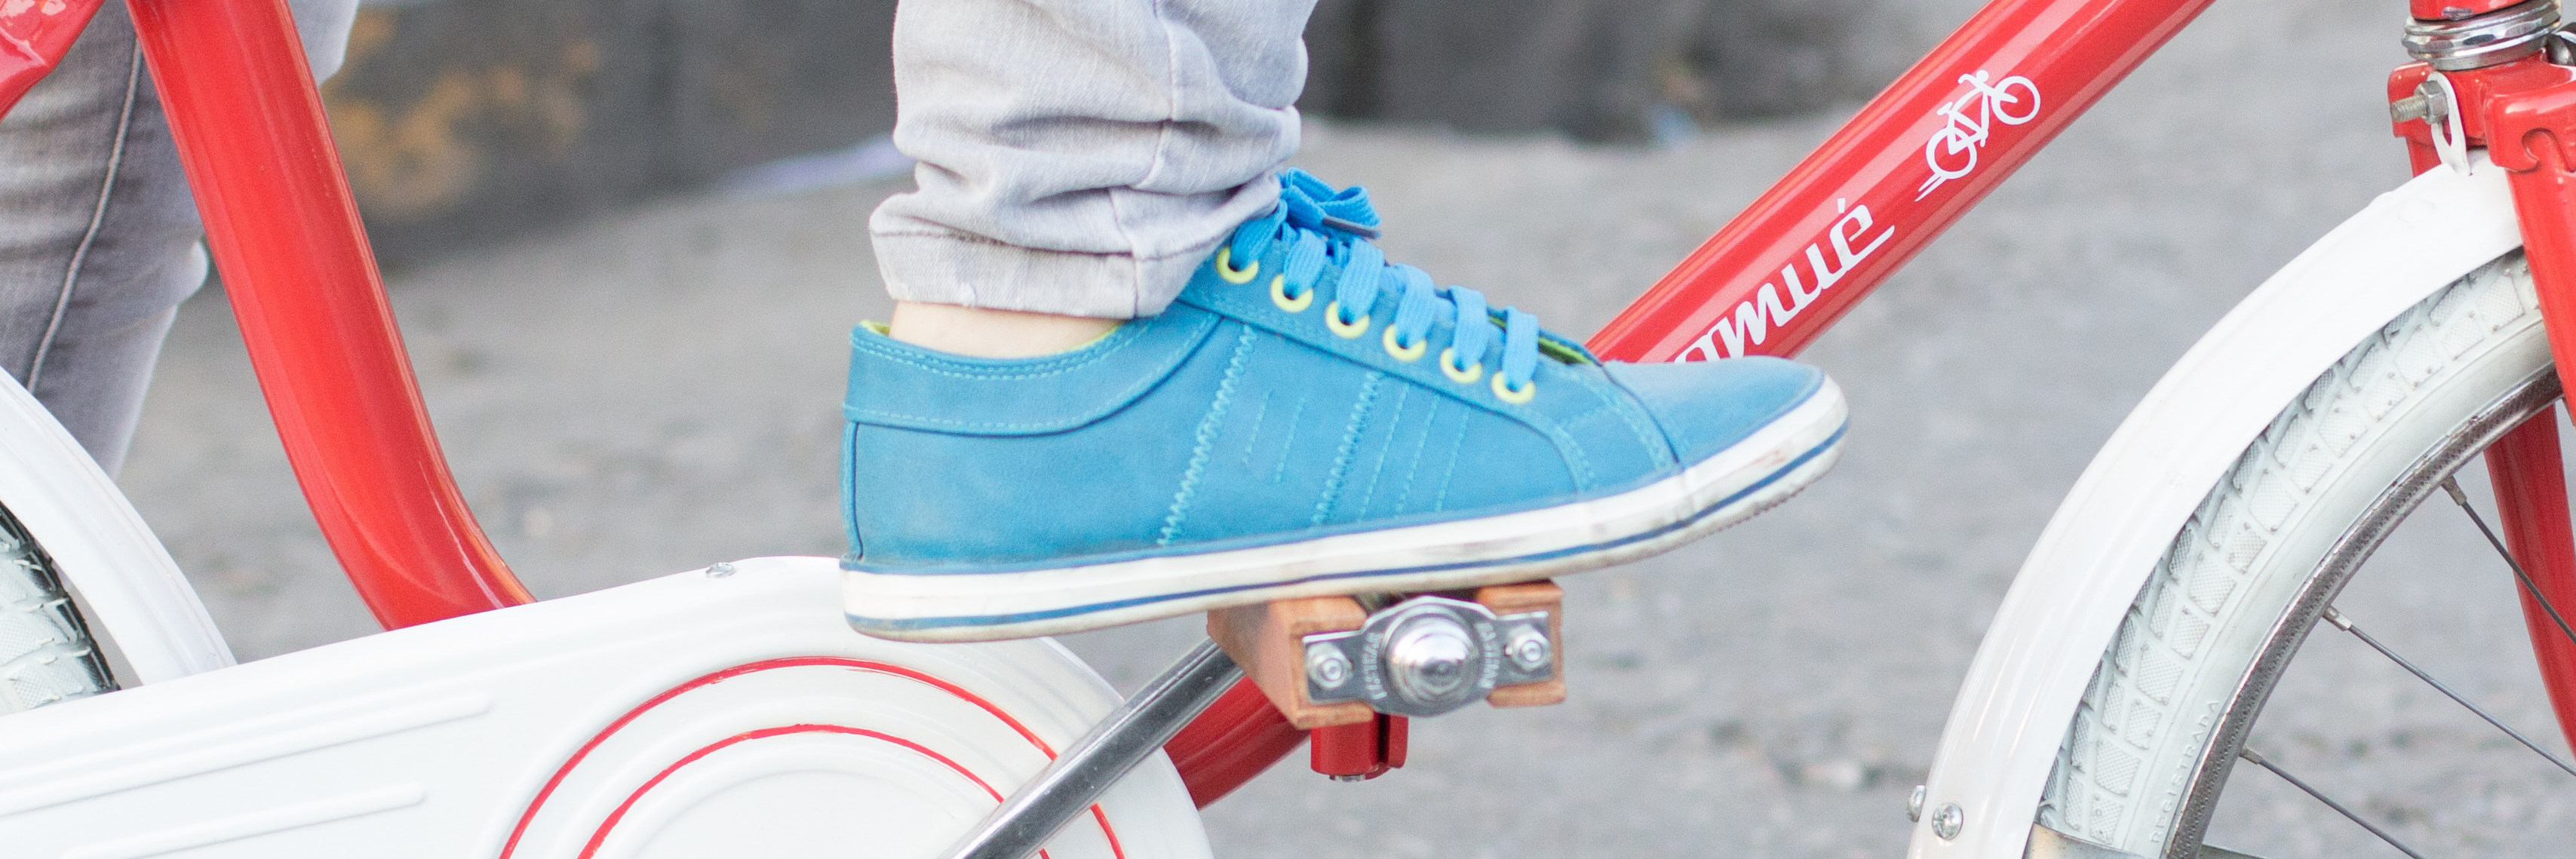 Foot in a blue sneaker on a bike pedal